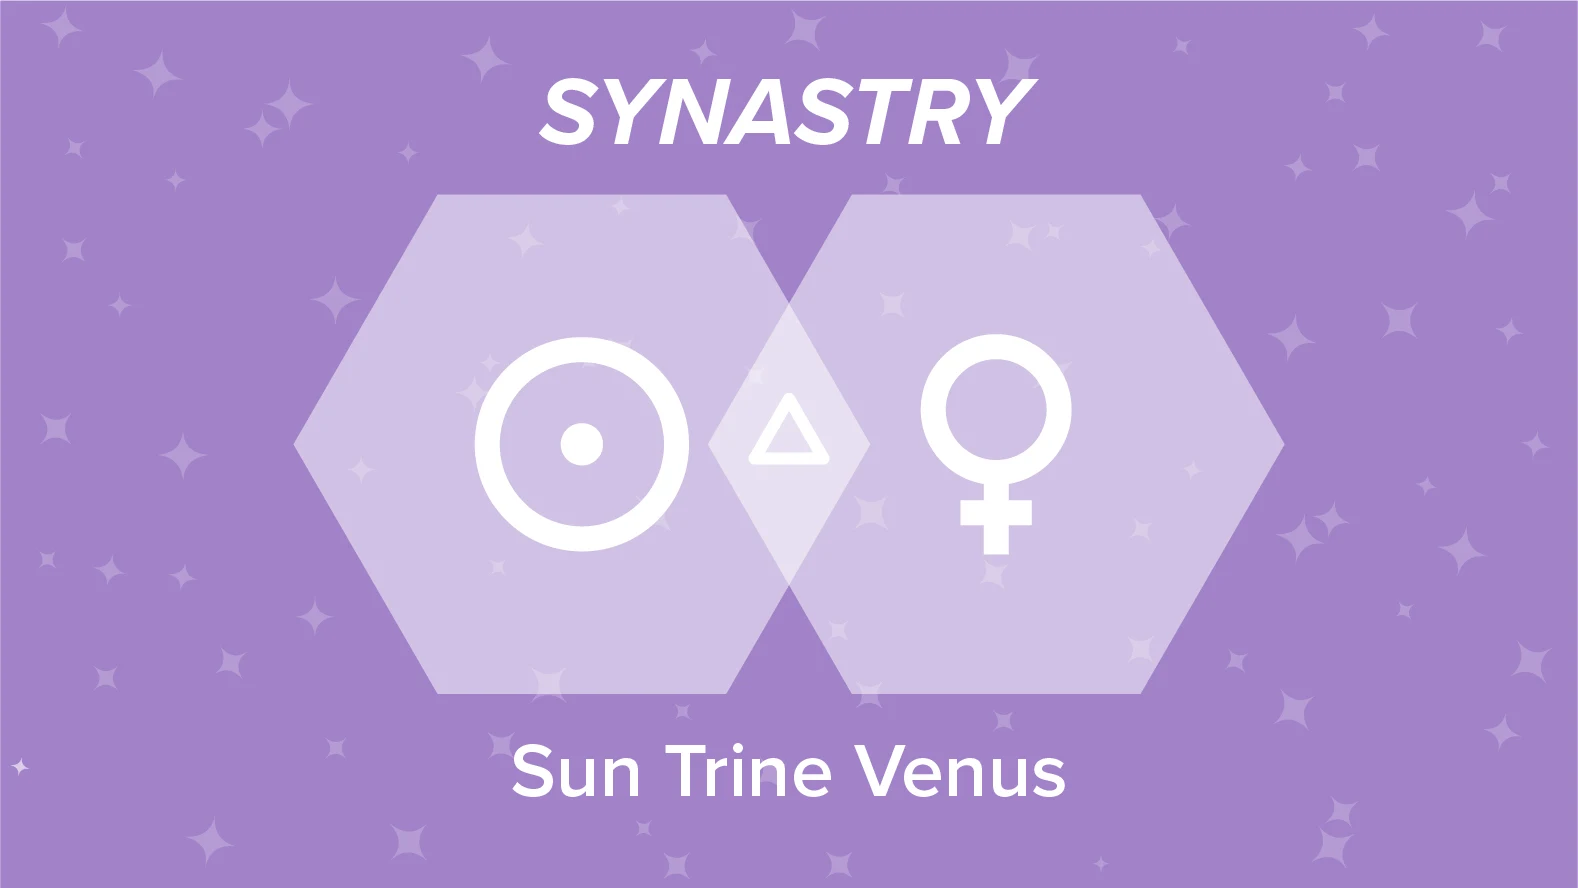 Sun Trine Venus Synastry